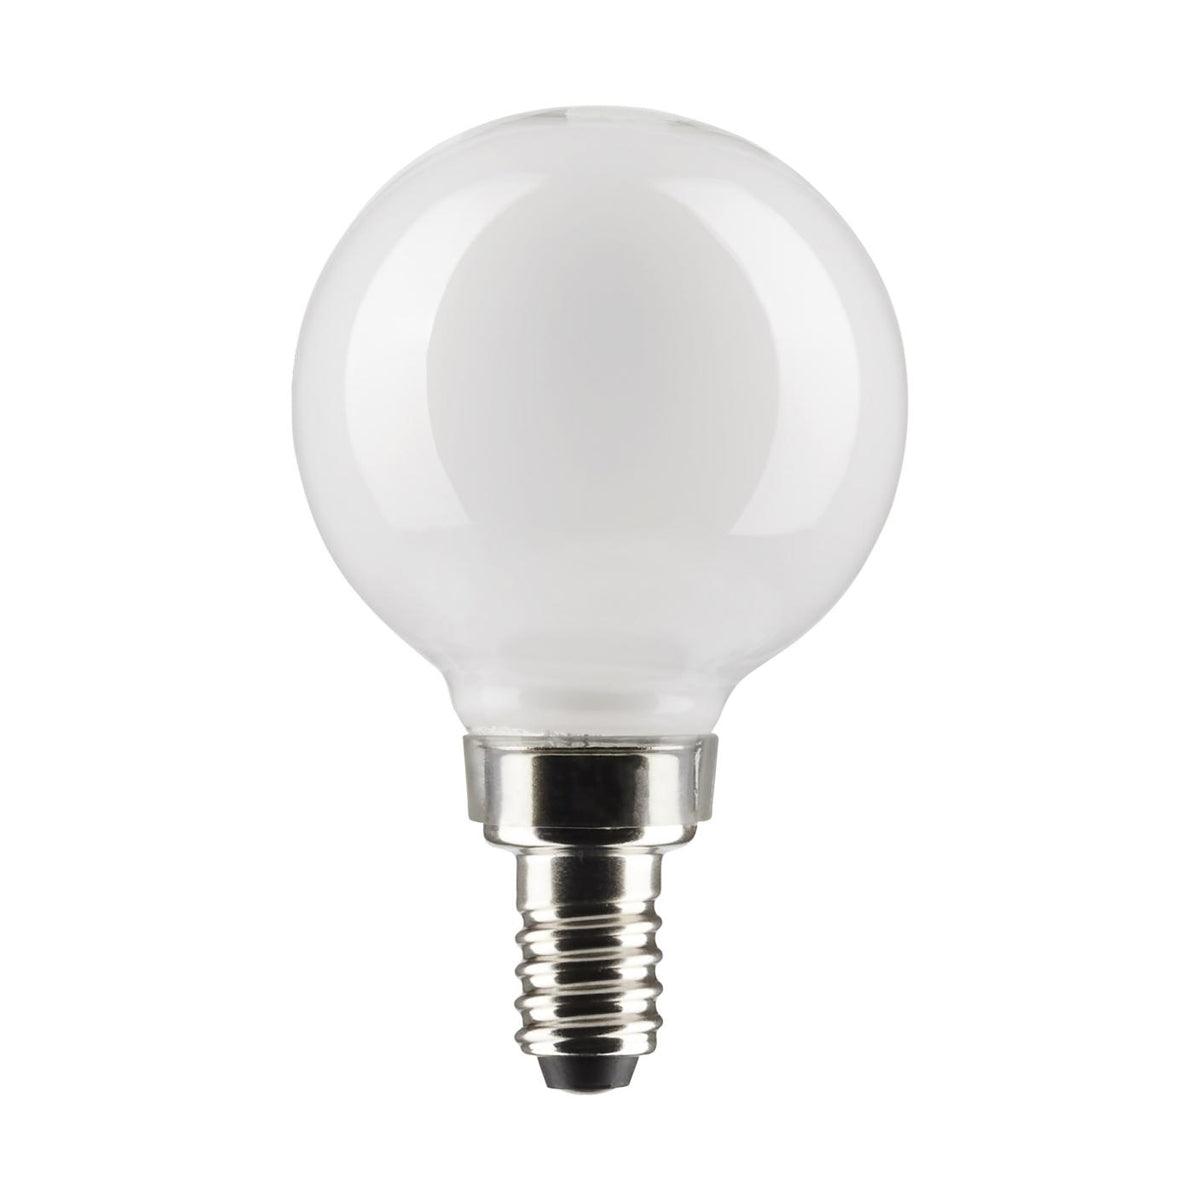 G16.5 Filament LED Globe Bulb, 6 Watt, 500 Lumens, 2700K, E12 Candelabra Base, Frosted Finish, Pack Of 2